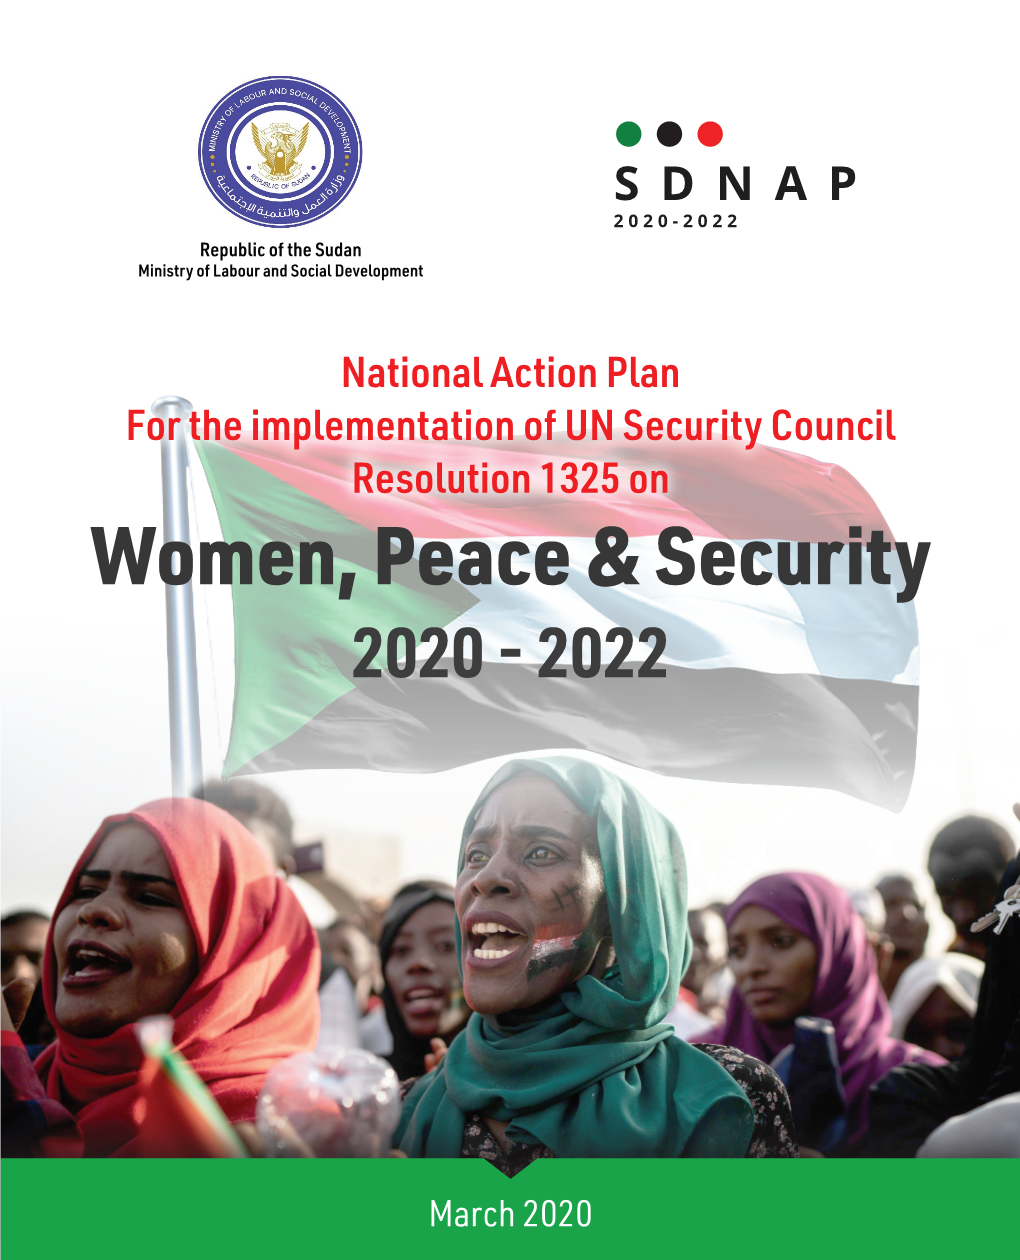 Women, Peace & Security